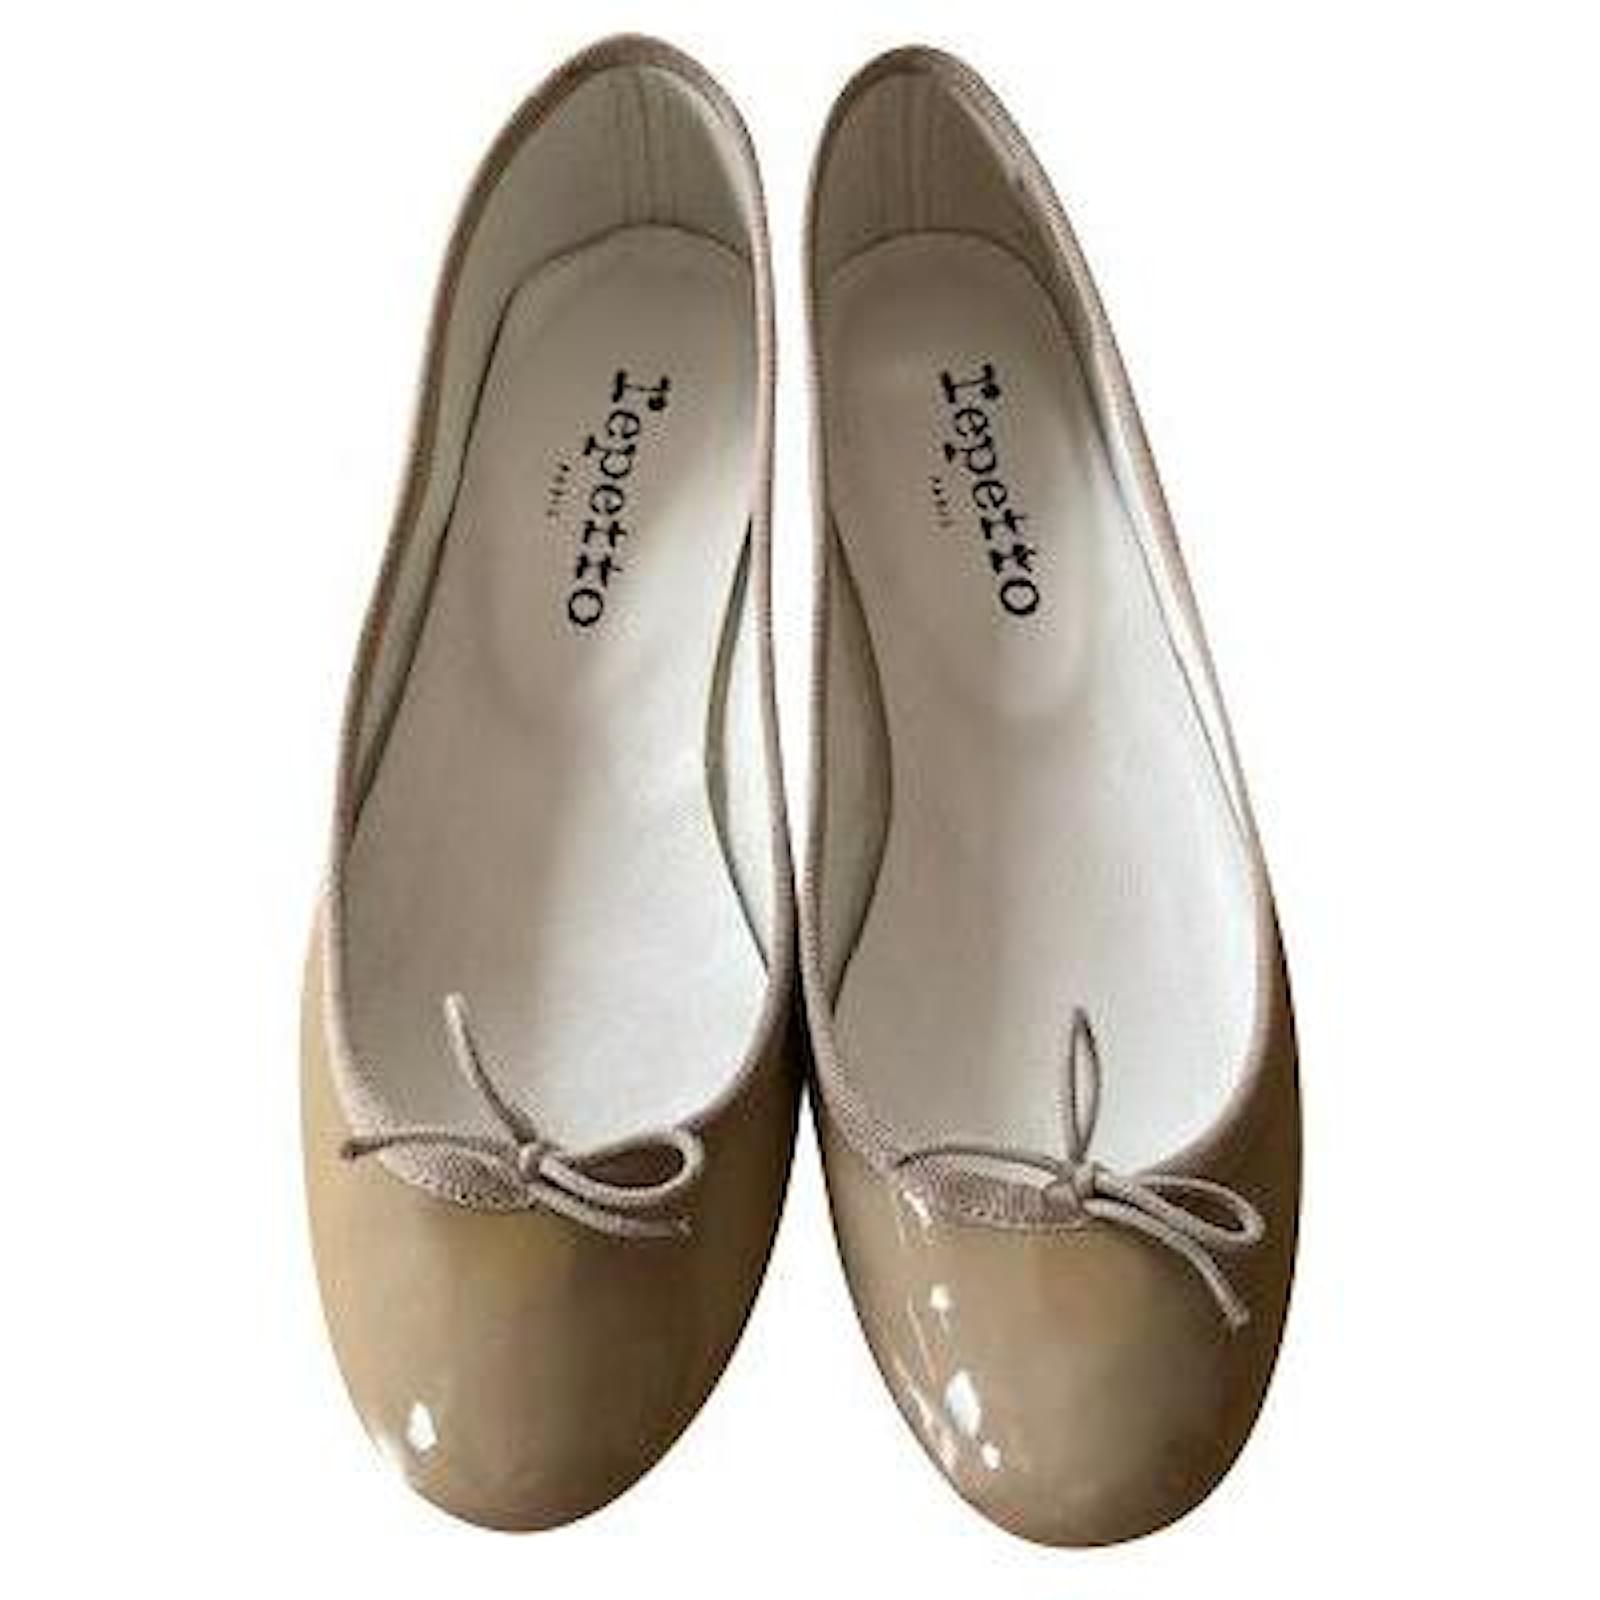 New Repetto Cendrillon ballerinas in beige patent leather 36,5.